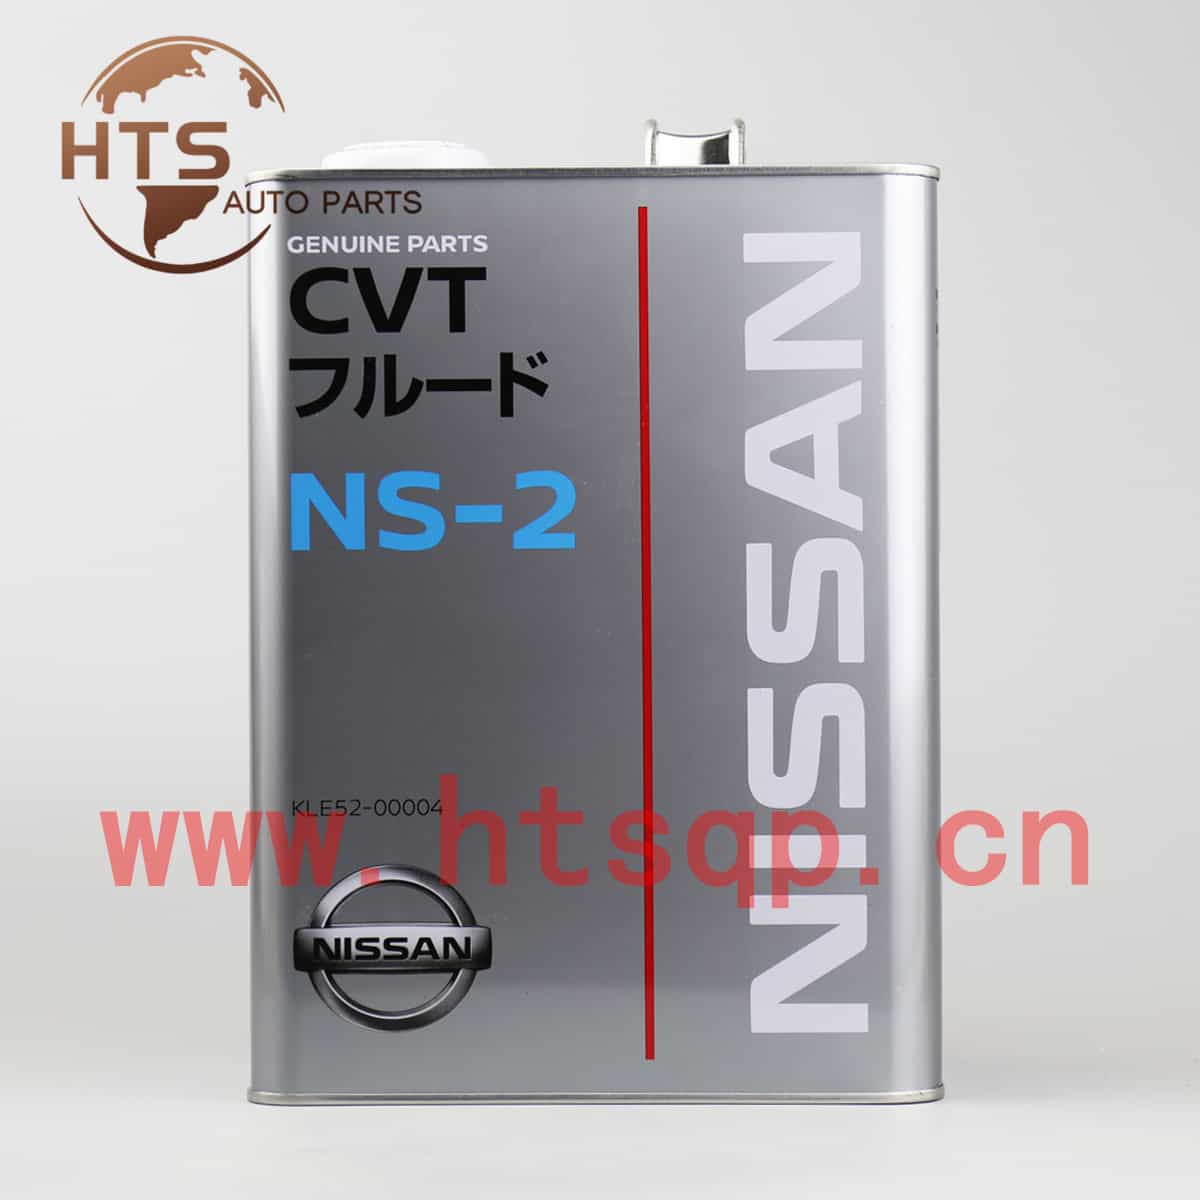 KLE5200004/NISSAN/CVT/NS-2/日产/变速箱油/KLE52-00004/4L